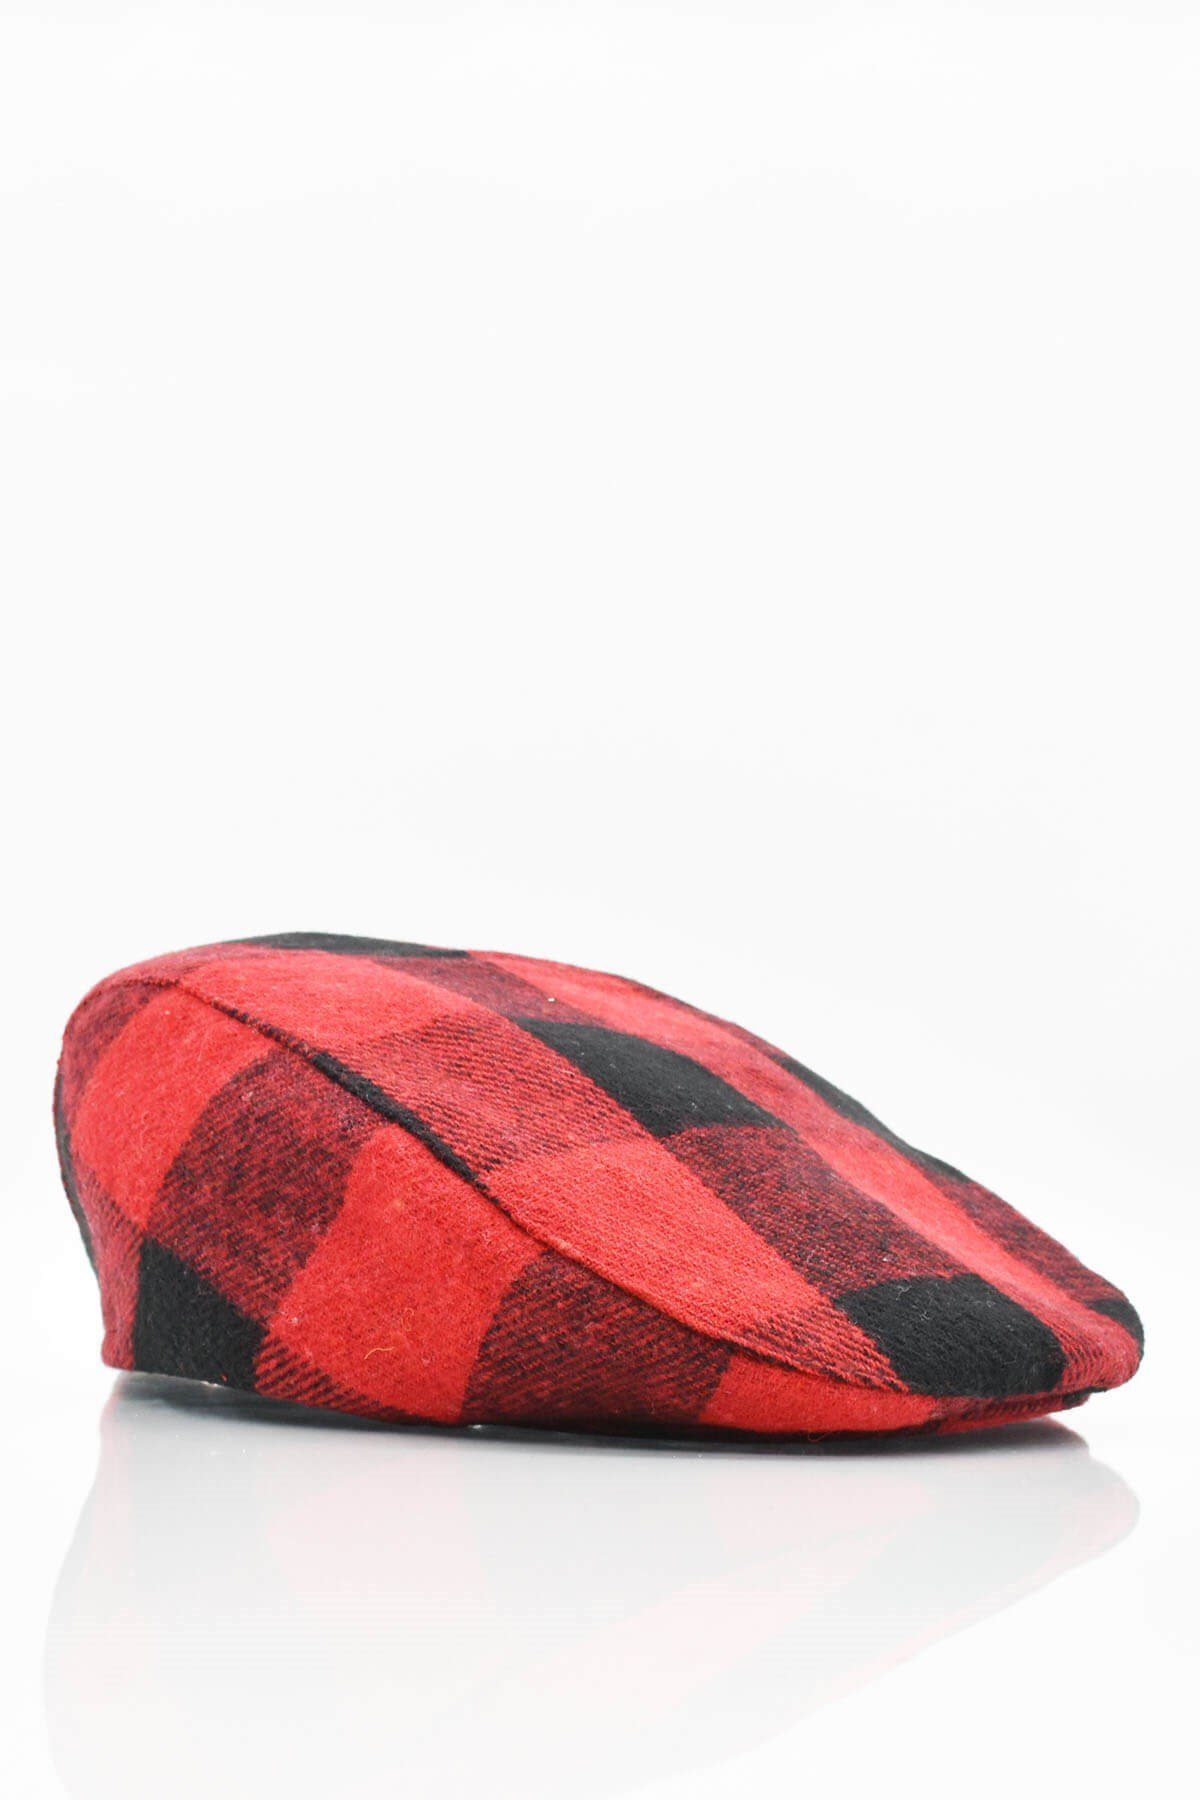 Külah İngiliz Holigan Şapka Erkek Yün Ekose Kasket-Kırmızı KLH6363